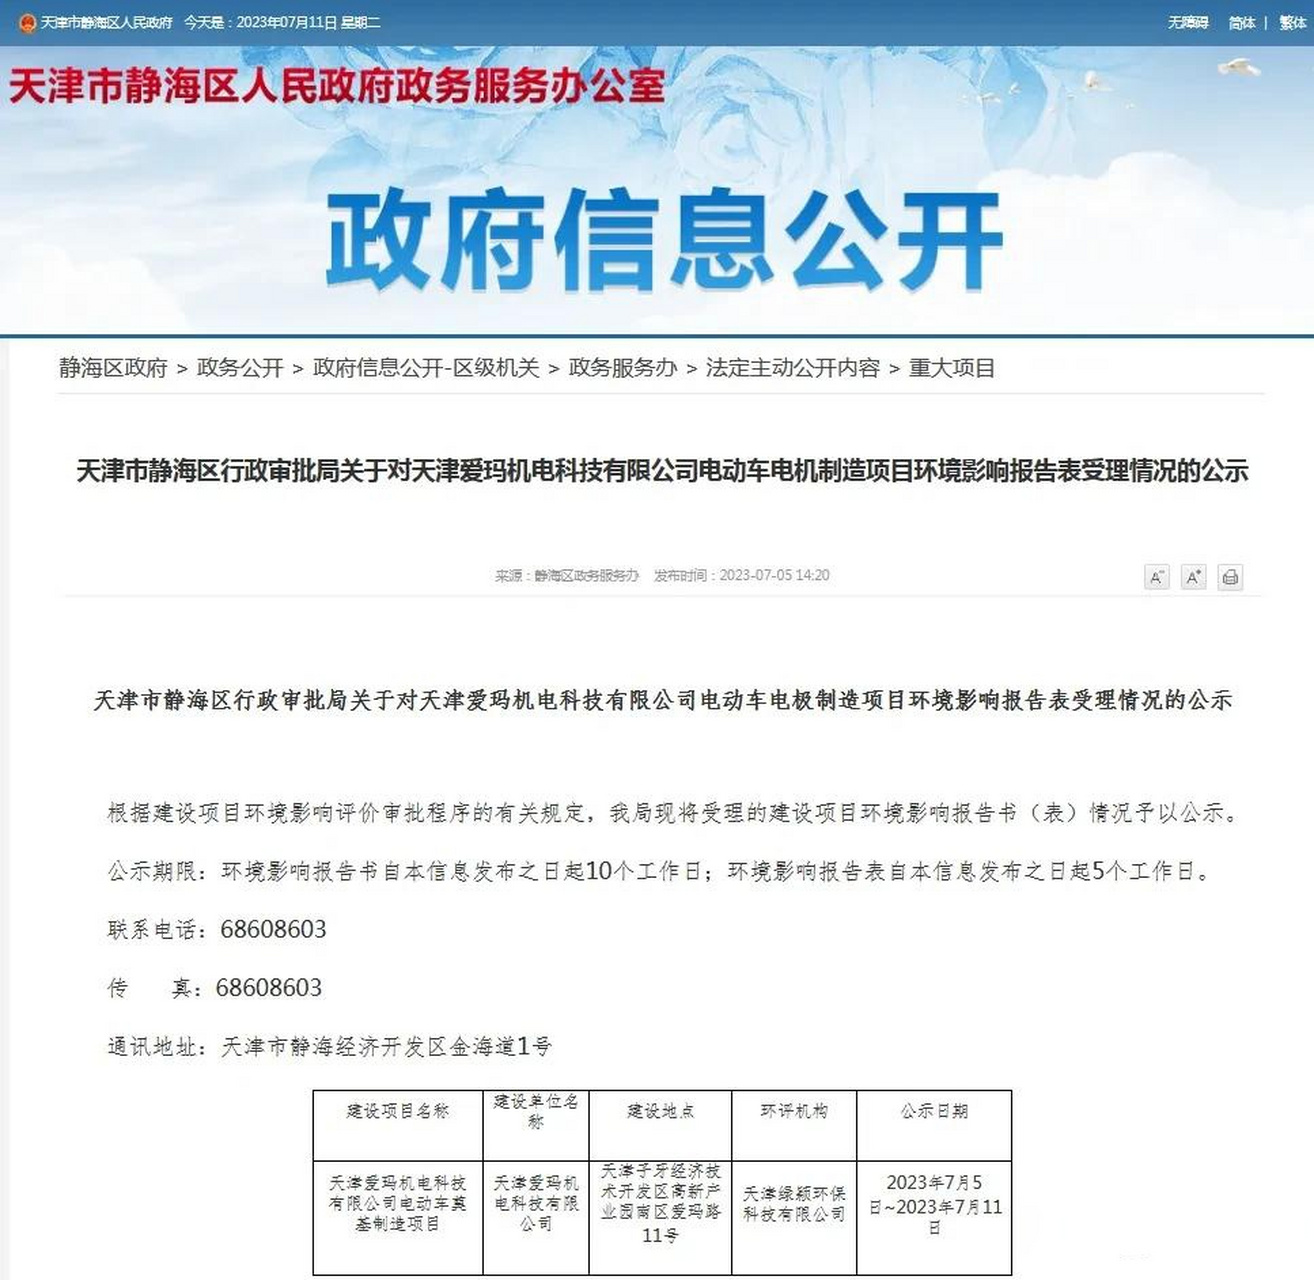 根据网站截图显示,天津爱玛机电科技有限公司成立于 2023 年 2月,是一